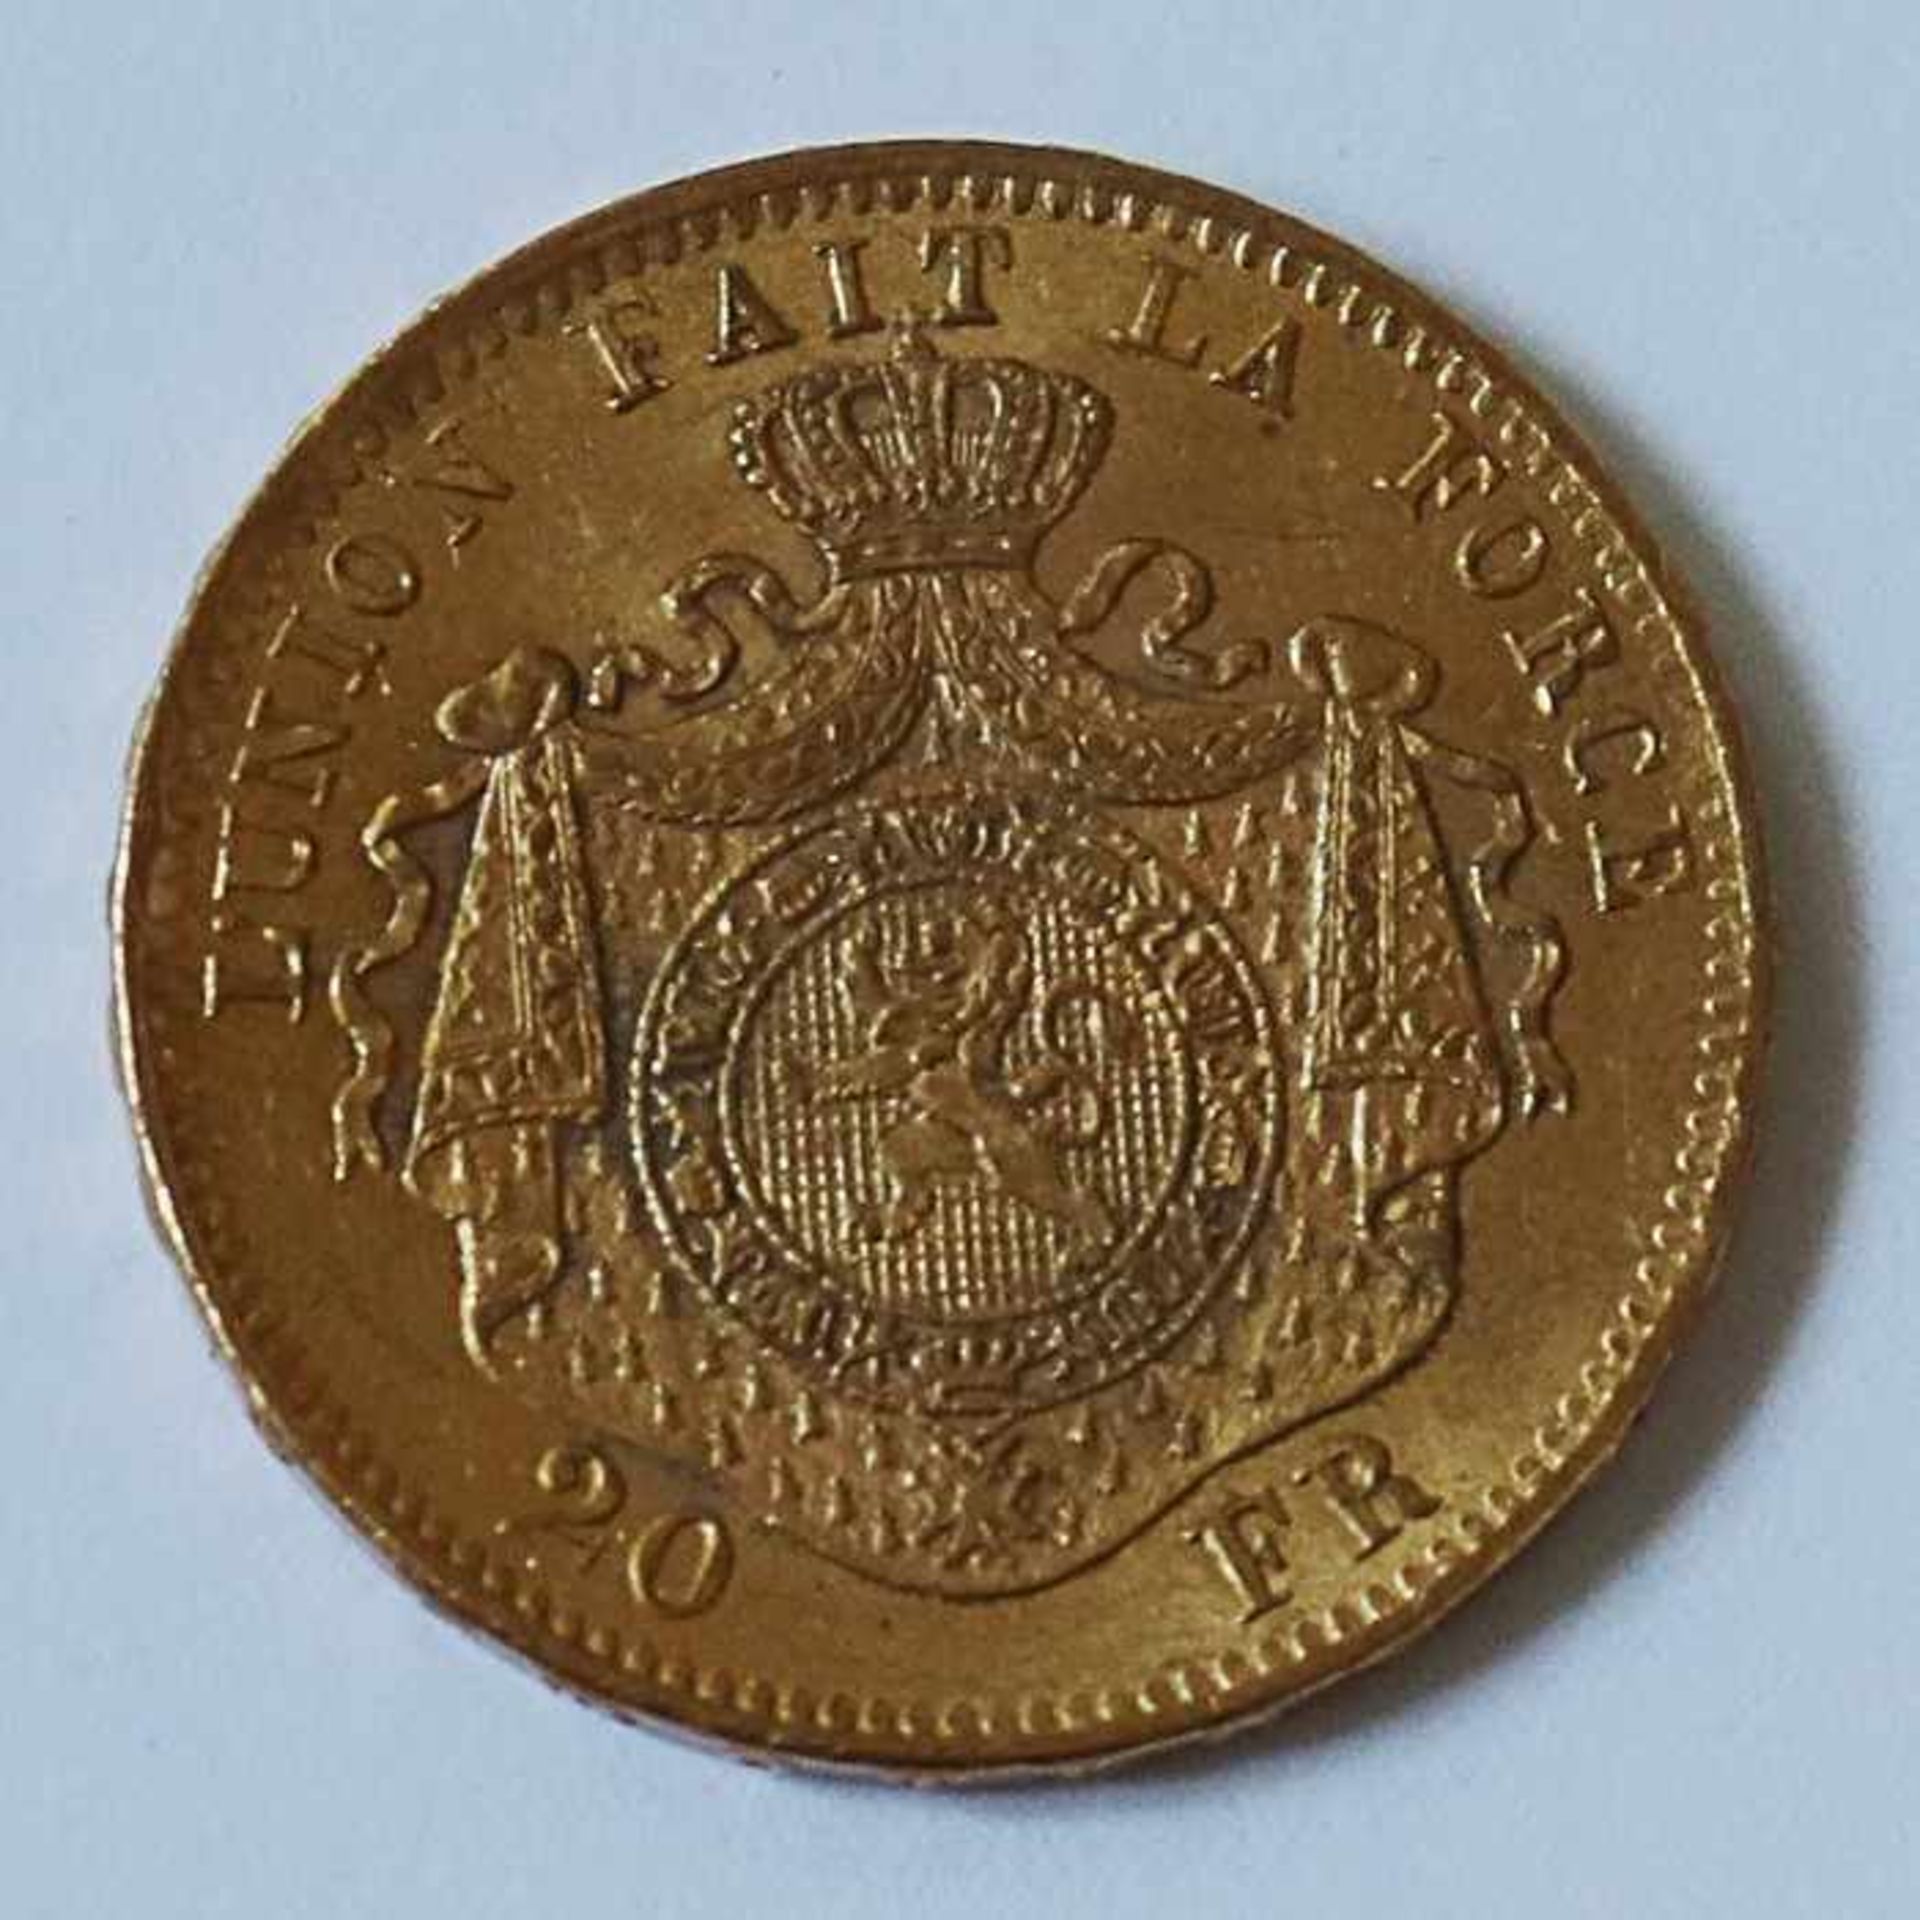 Gold - Belgien - 20 Francs 1871Leopold II, D 21mm, G 6,45g, vz - Image 4 of 4